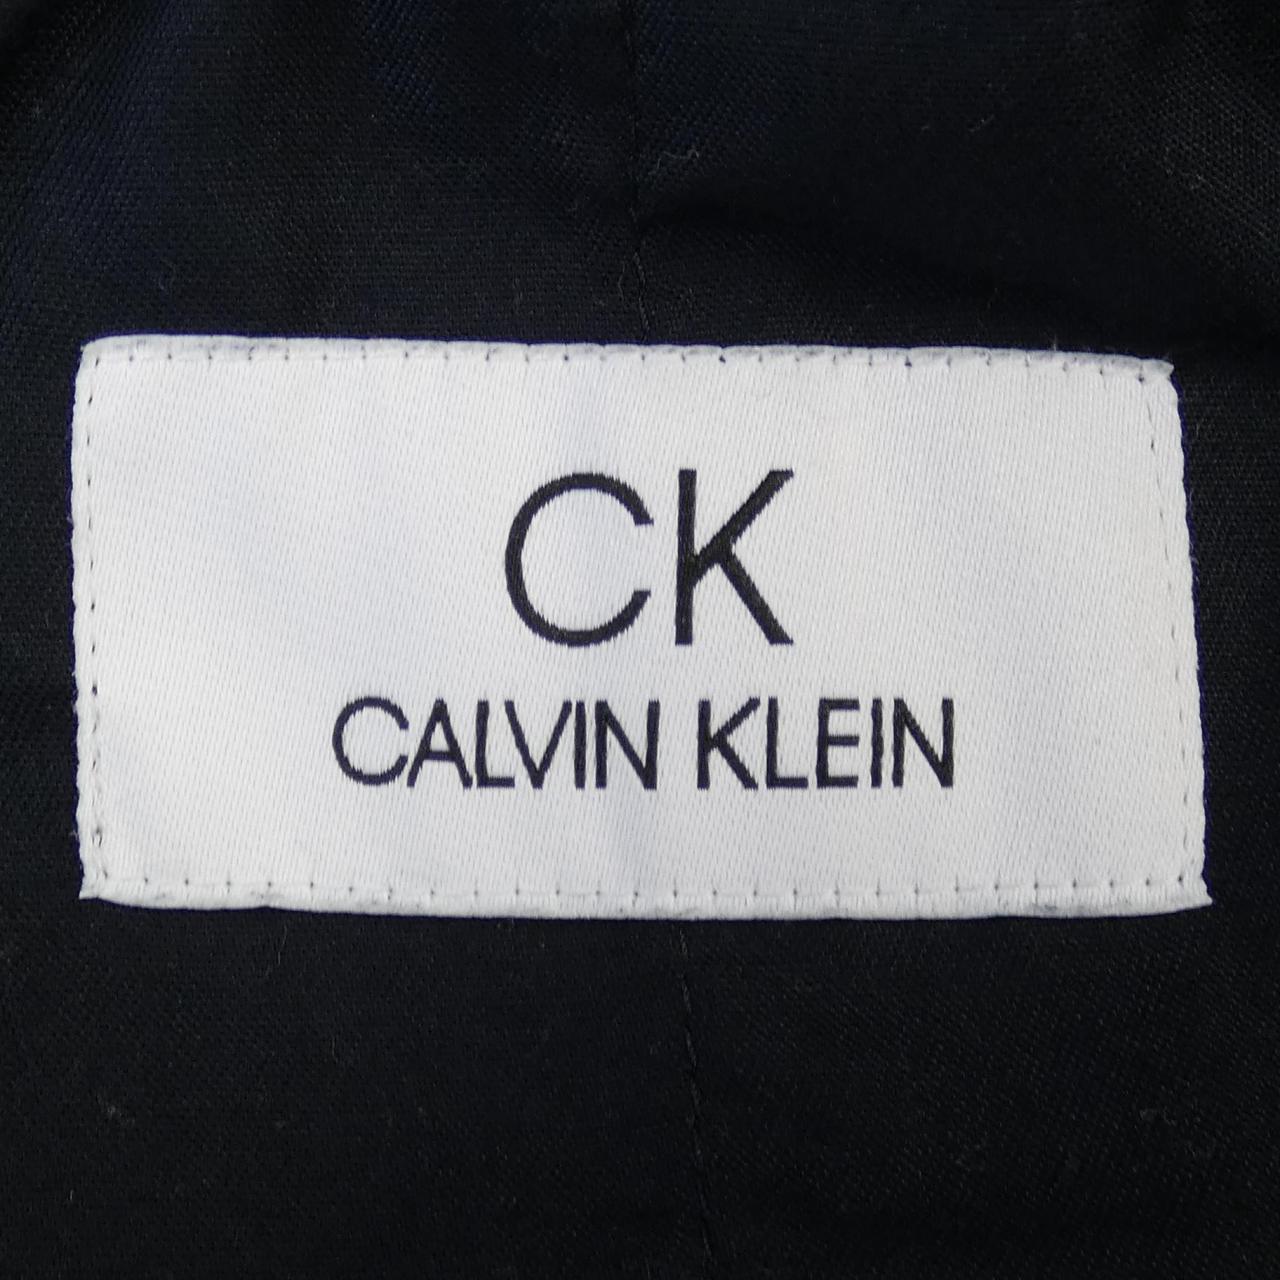 CK褲子